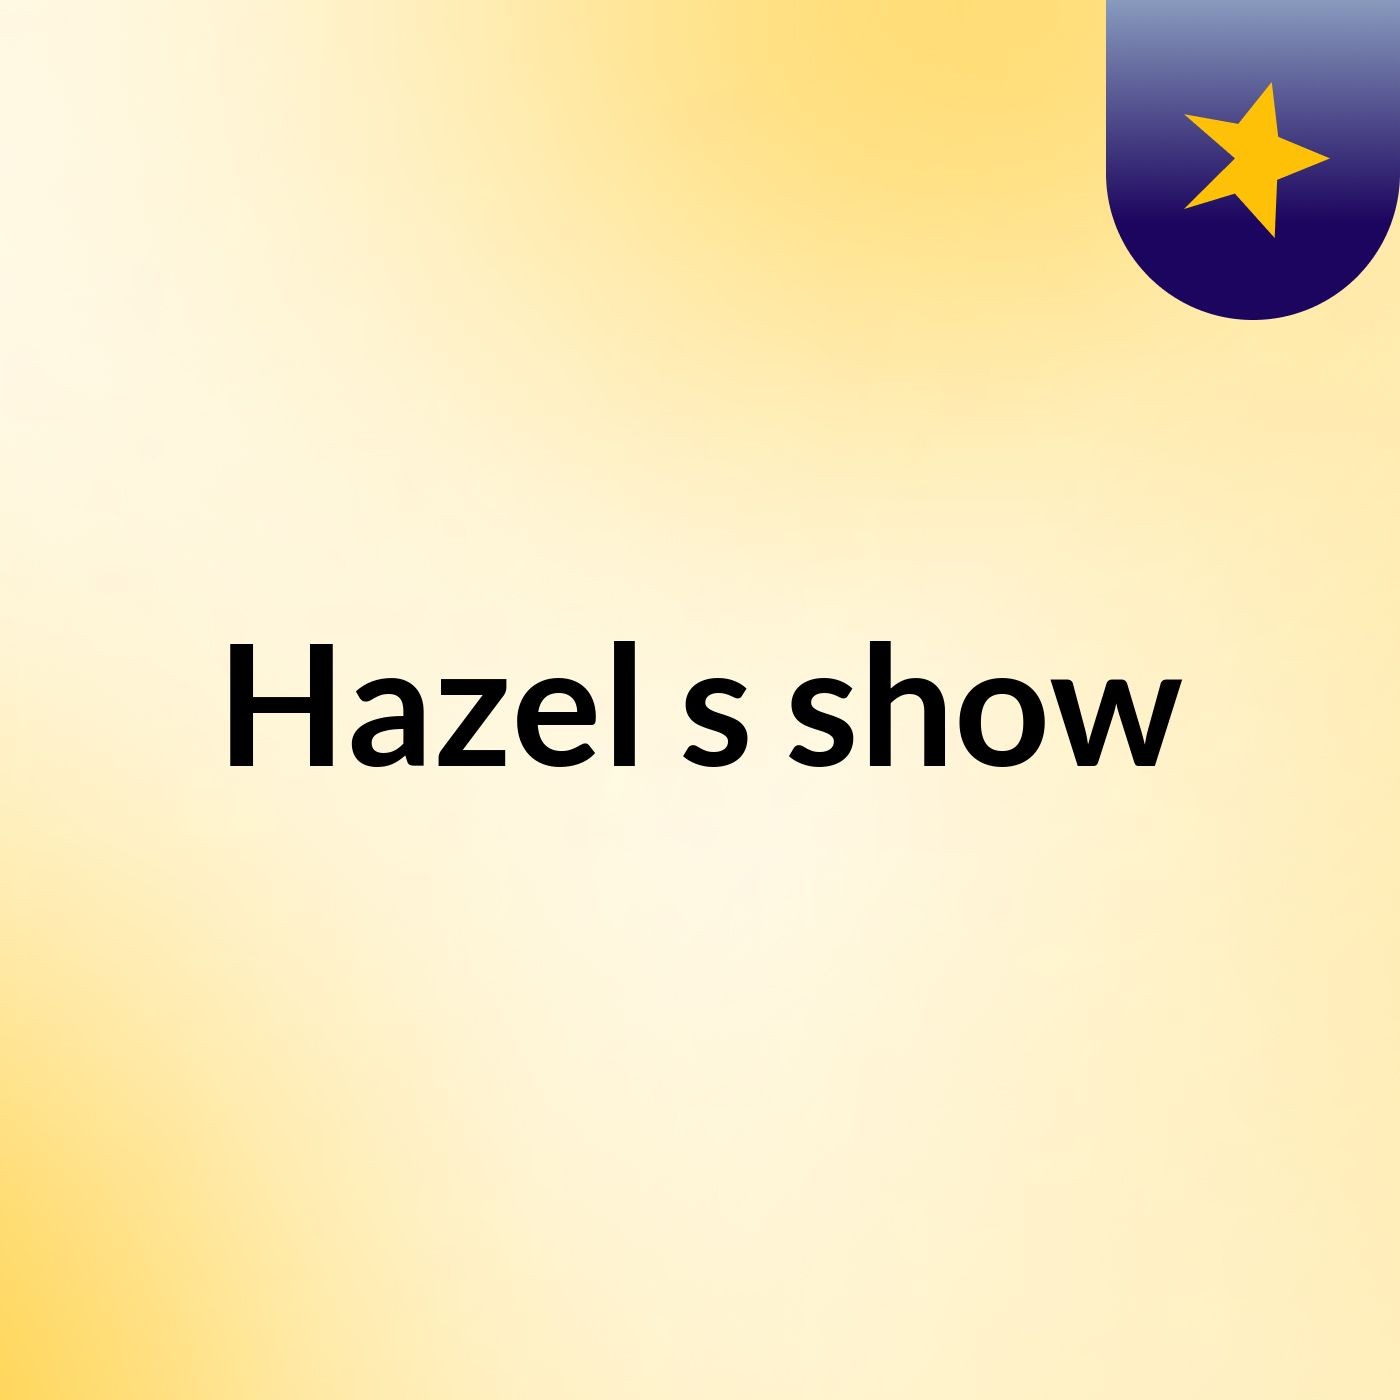 Hazel's show